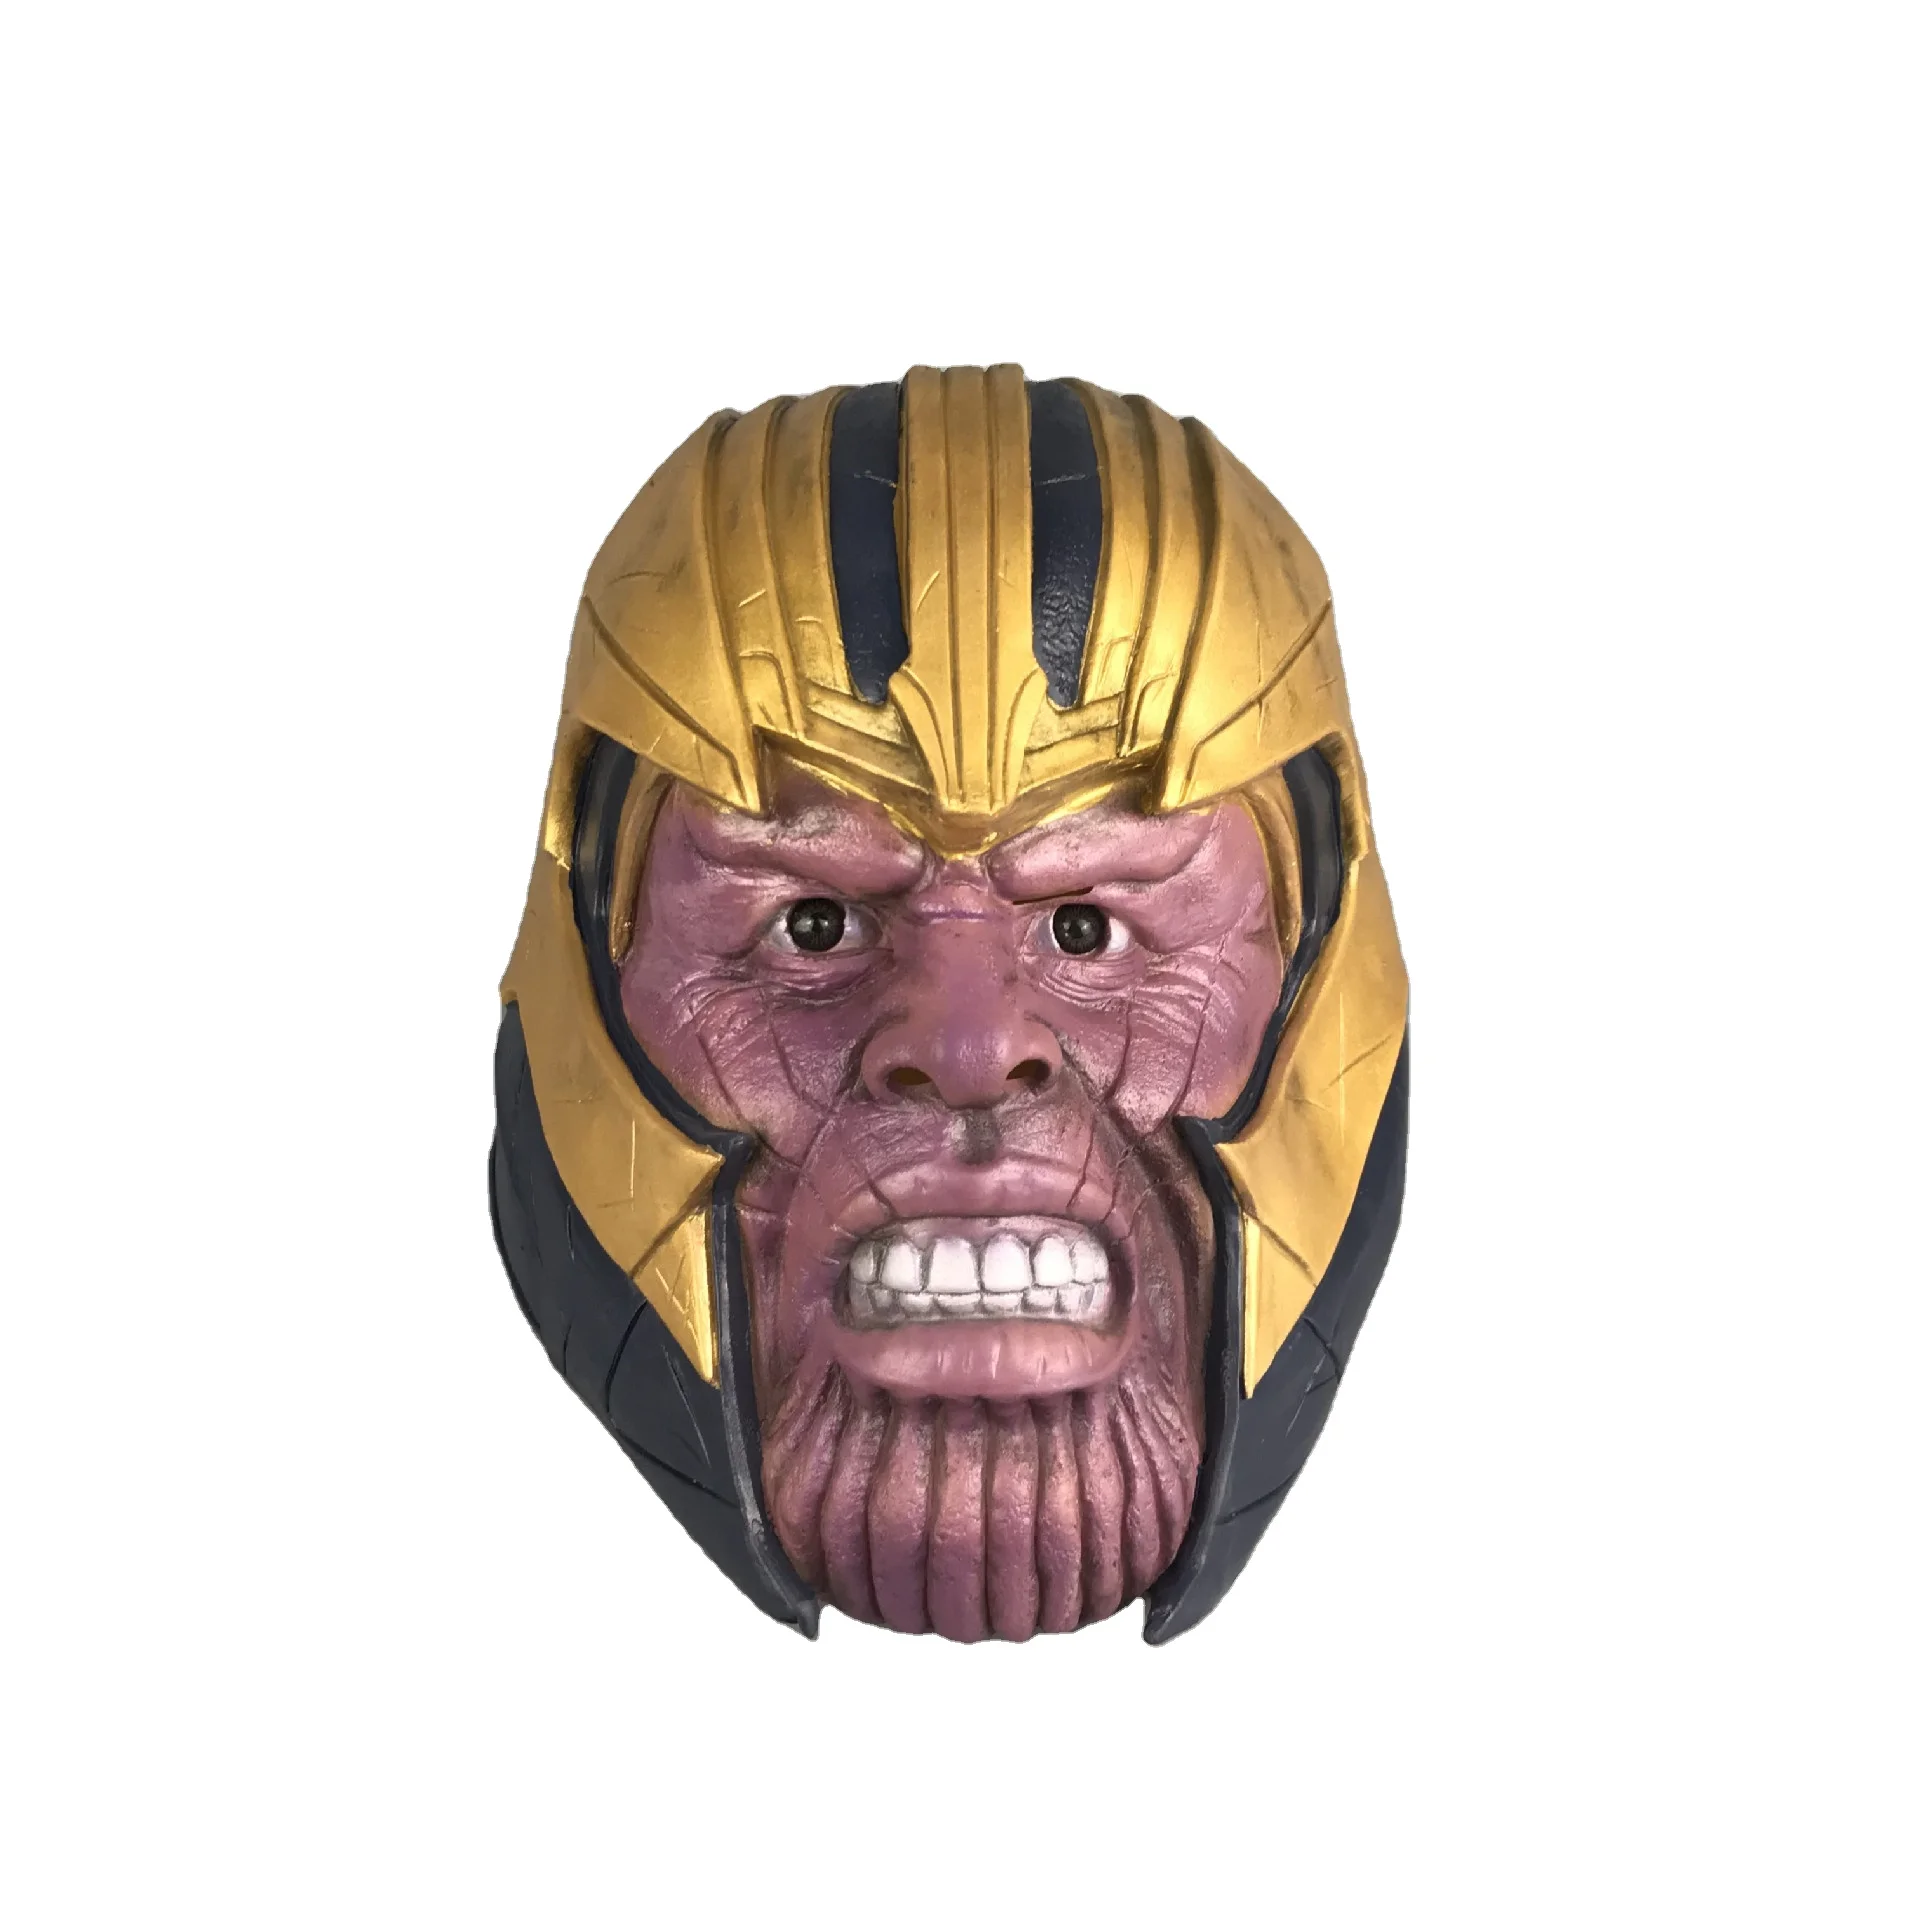 2019 Avengers Endgame Thanos Cosplay Mask Props Full Face Latex Halloween Helmet 